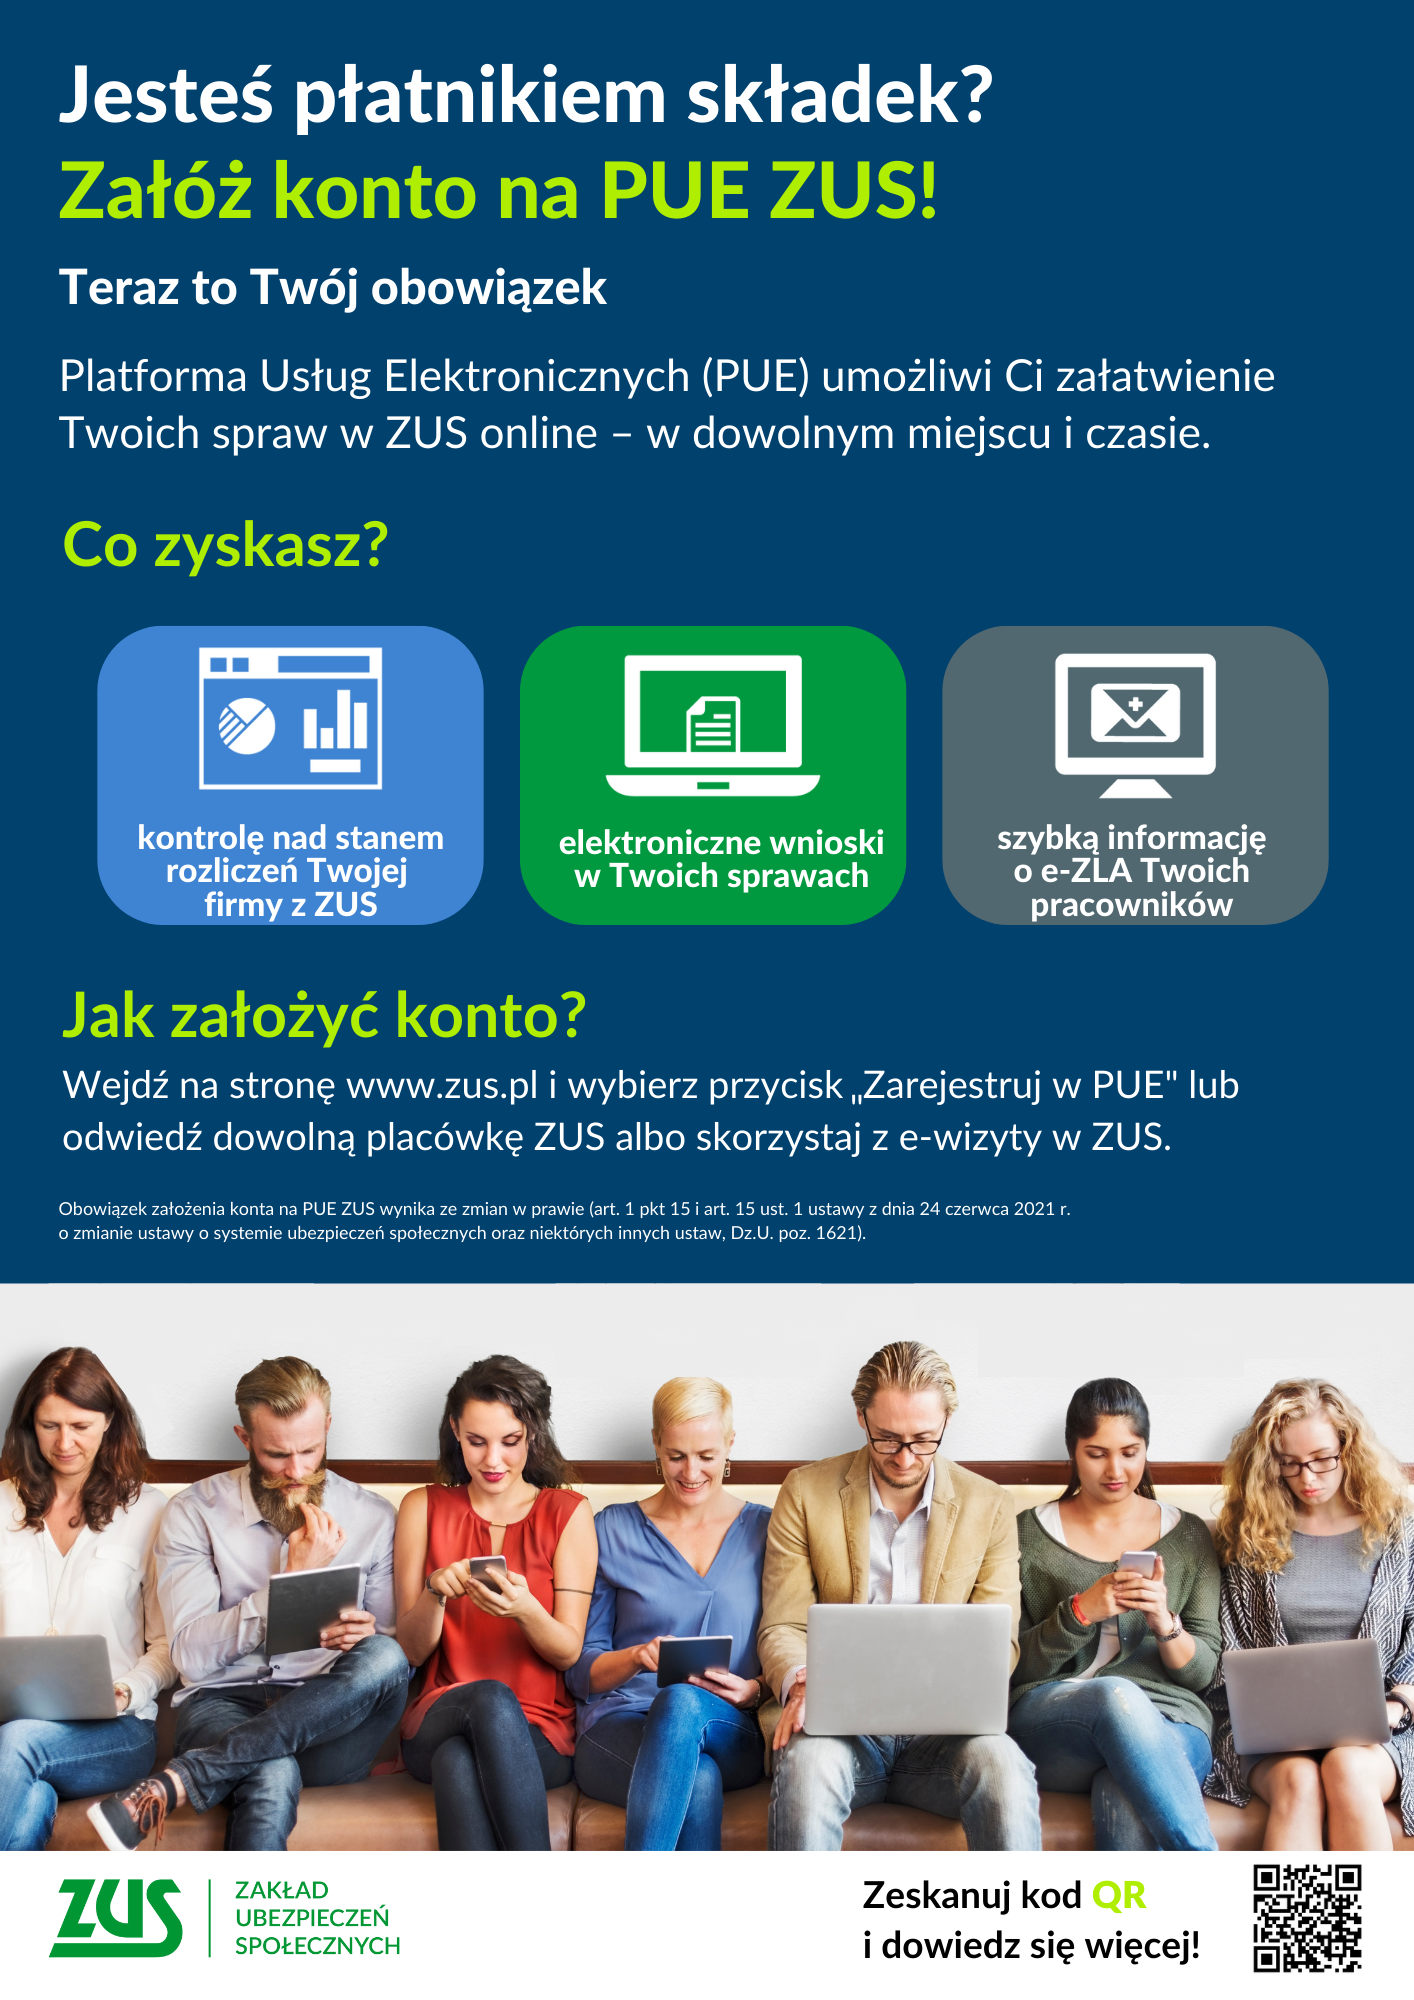 Plakat promujący Platformę Usług Elektronicznych Zakładu Ubezpieczeń Społecznych